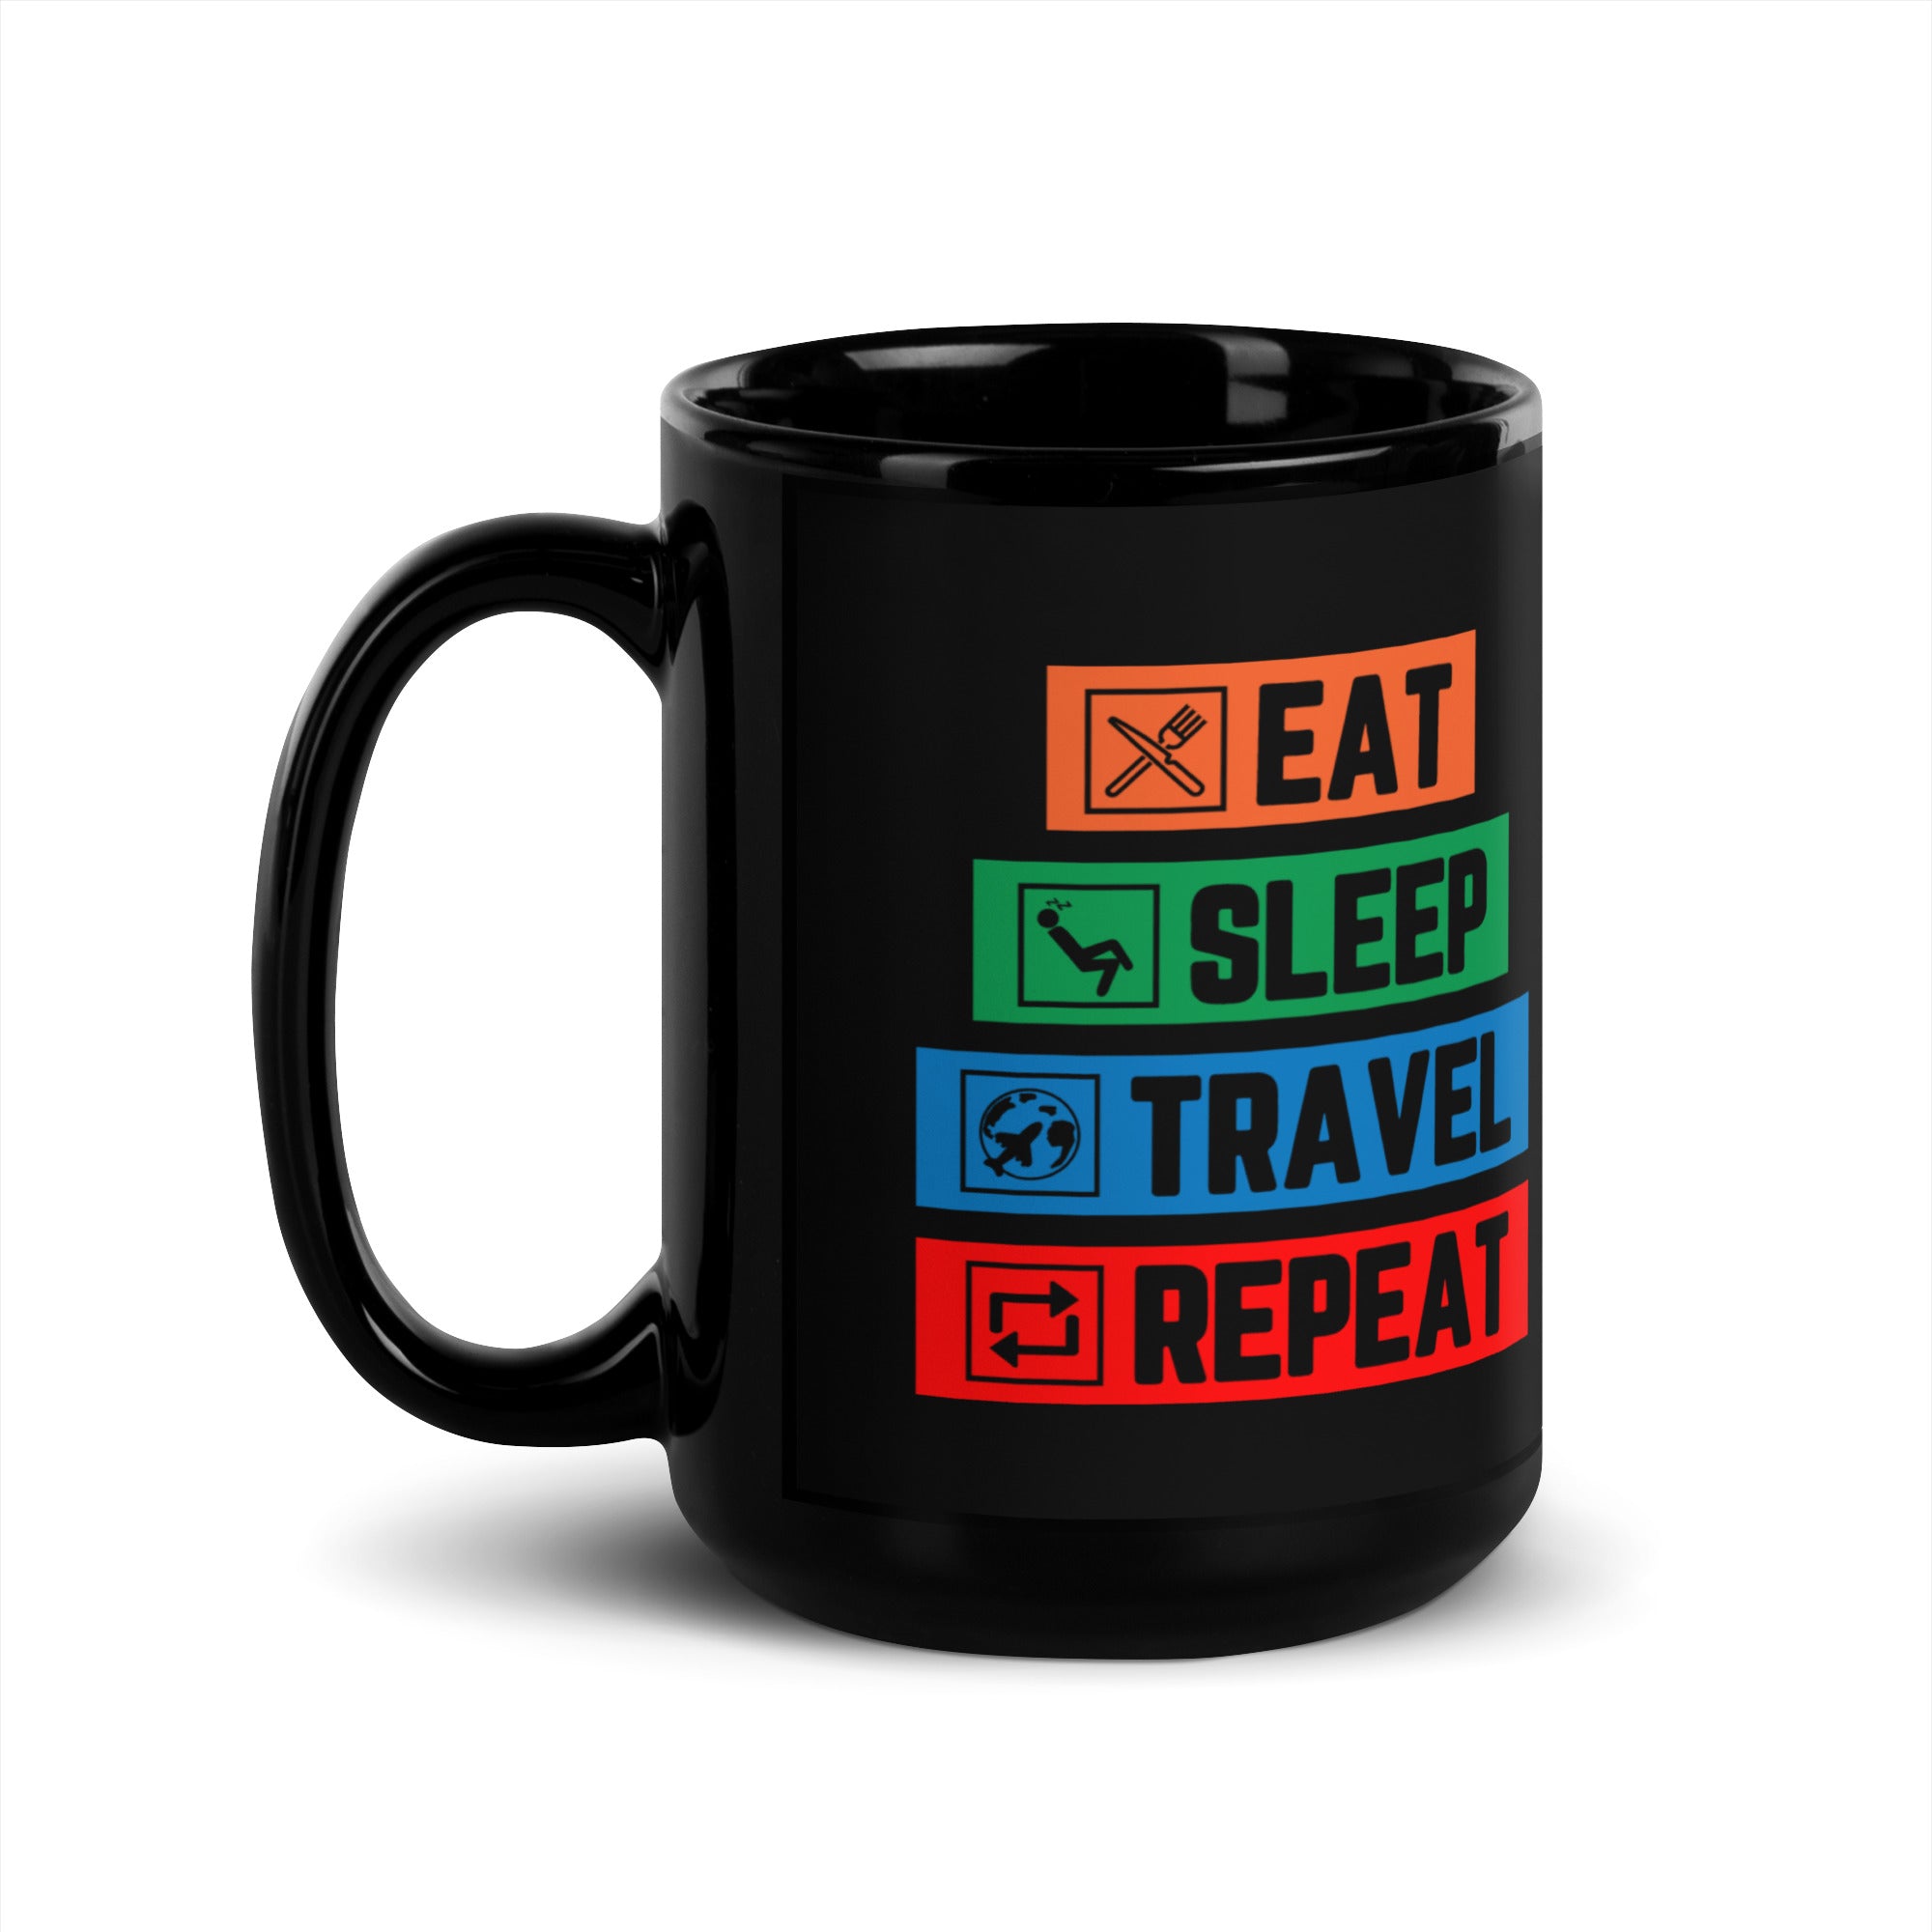 Eat Sleep Travel Repeat - Black Mug